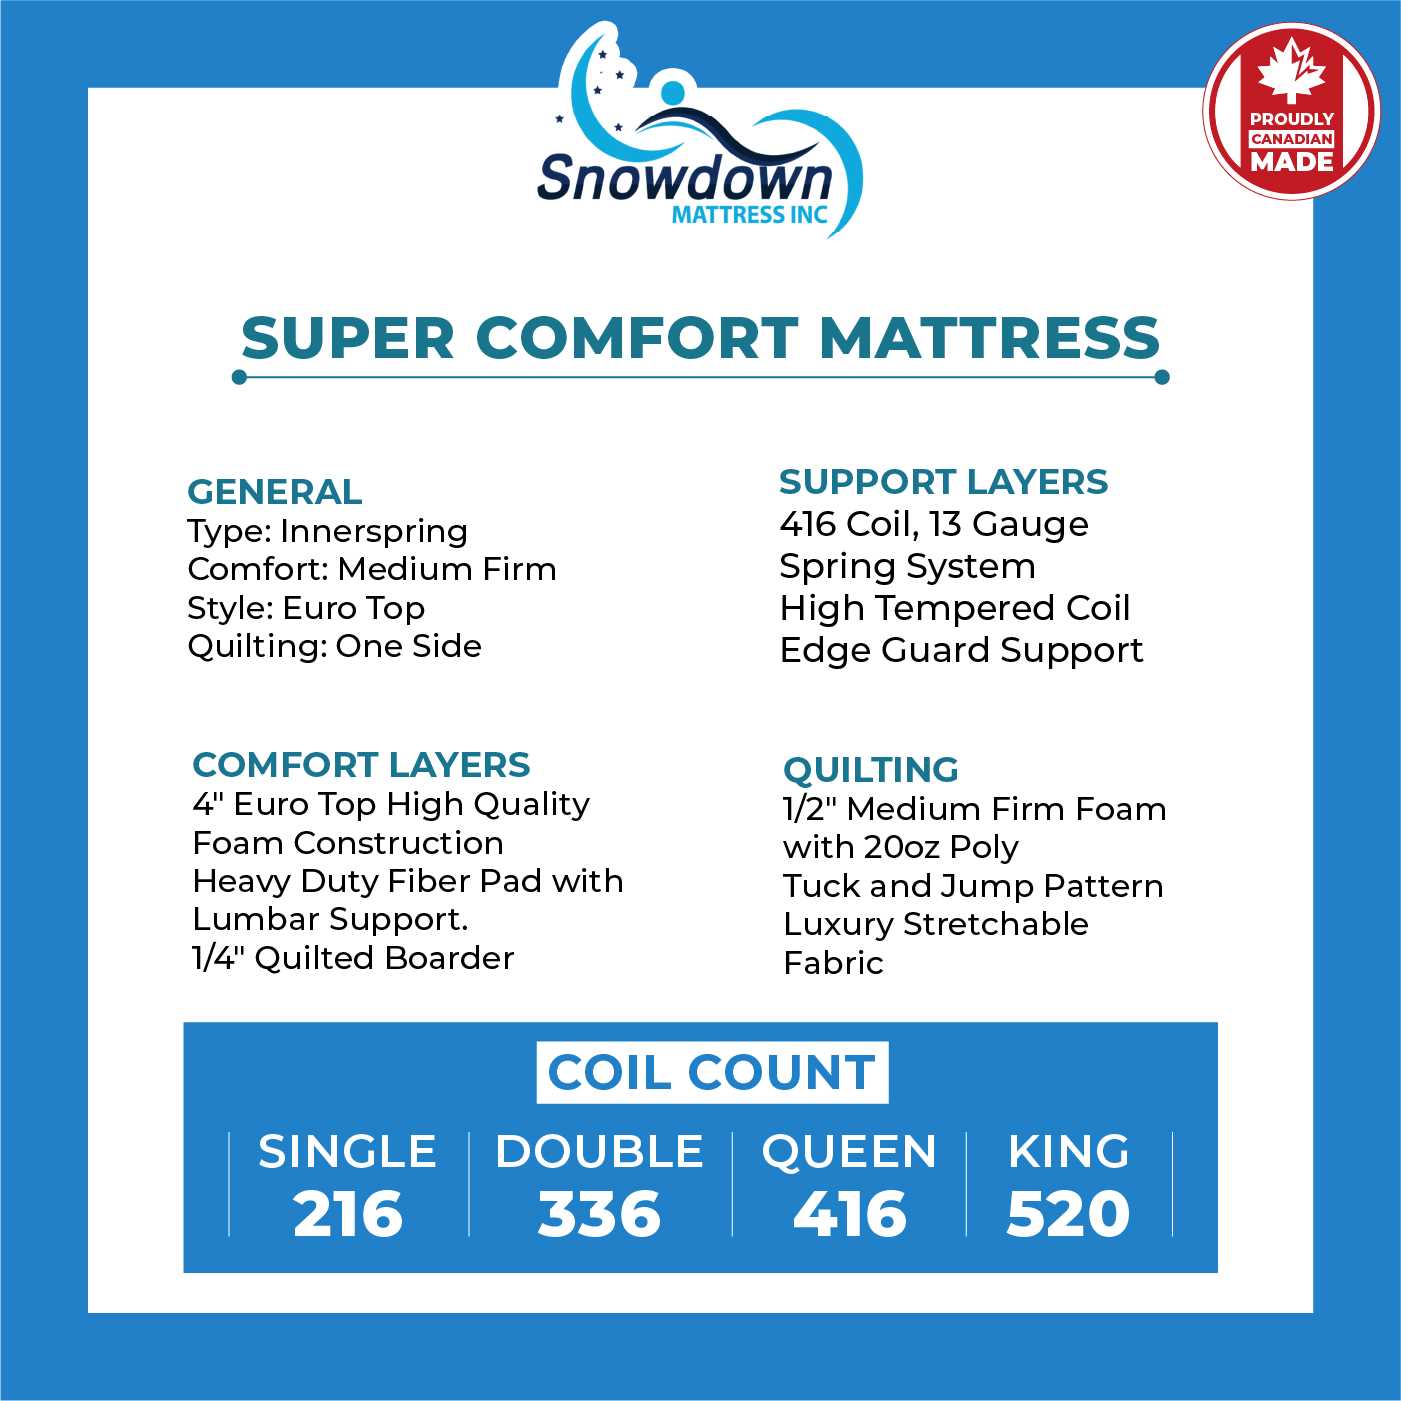 Super Comfort Mattress